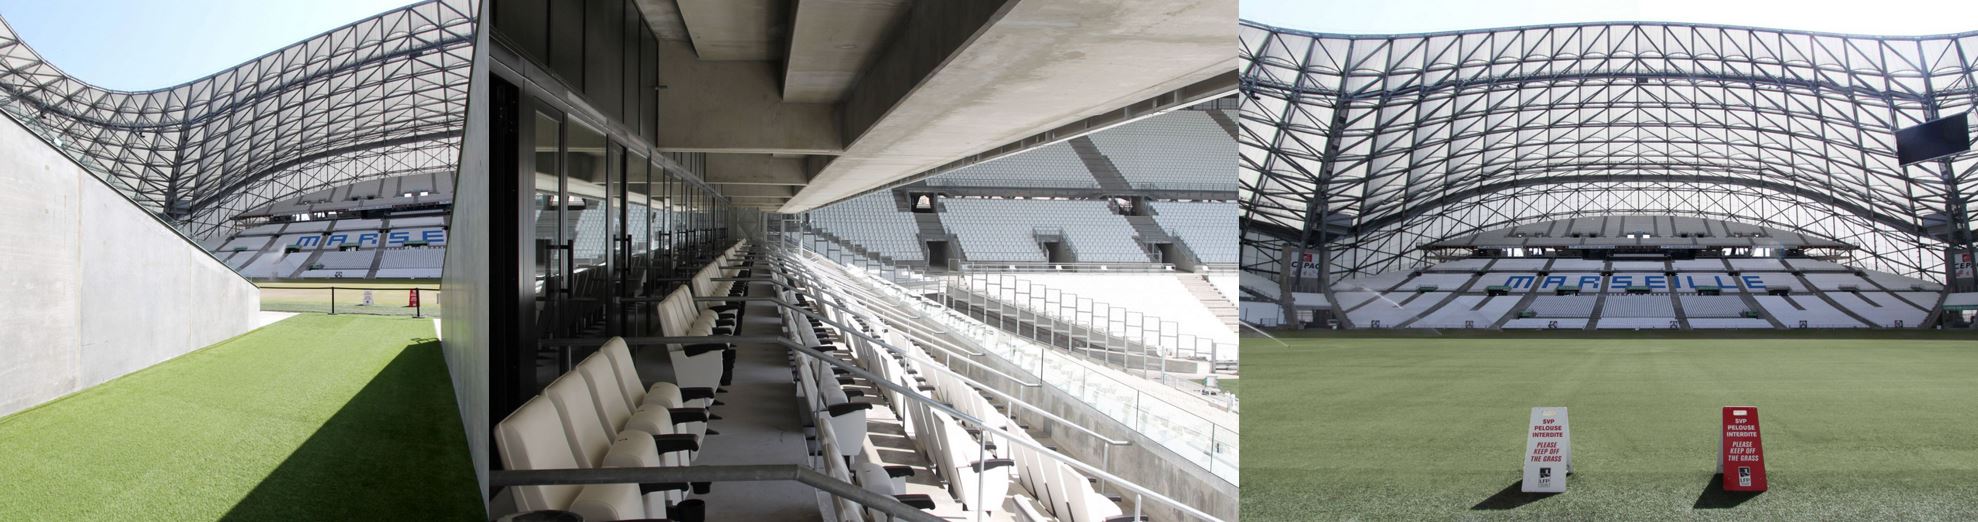 Visiter le Stade Vélodrome - Horaires, tarifs, prix, accès